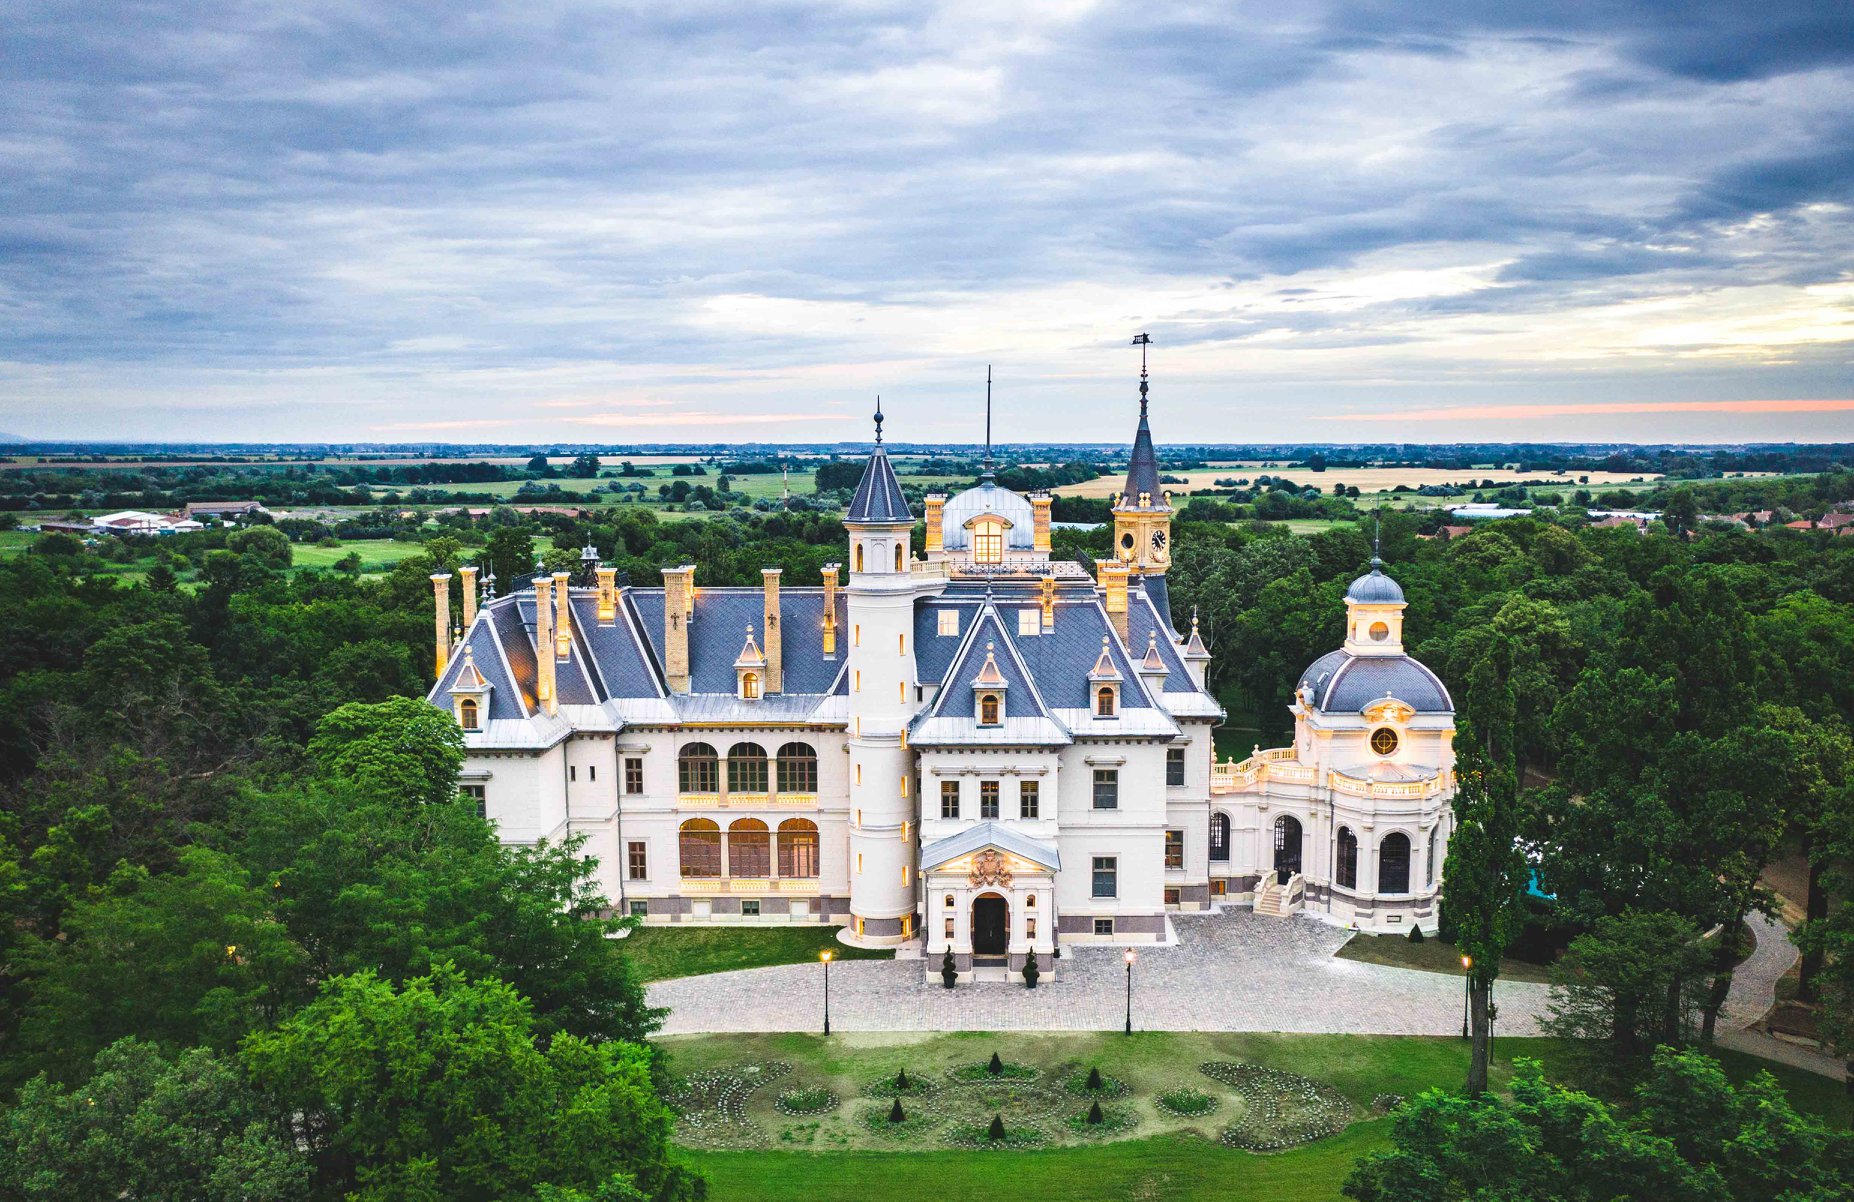 Magyarország legszebb helyei: 15 mesebeli kastély, amit egyszer az életben látni kell